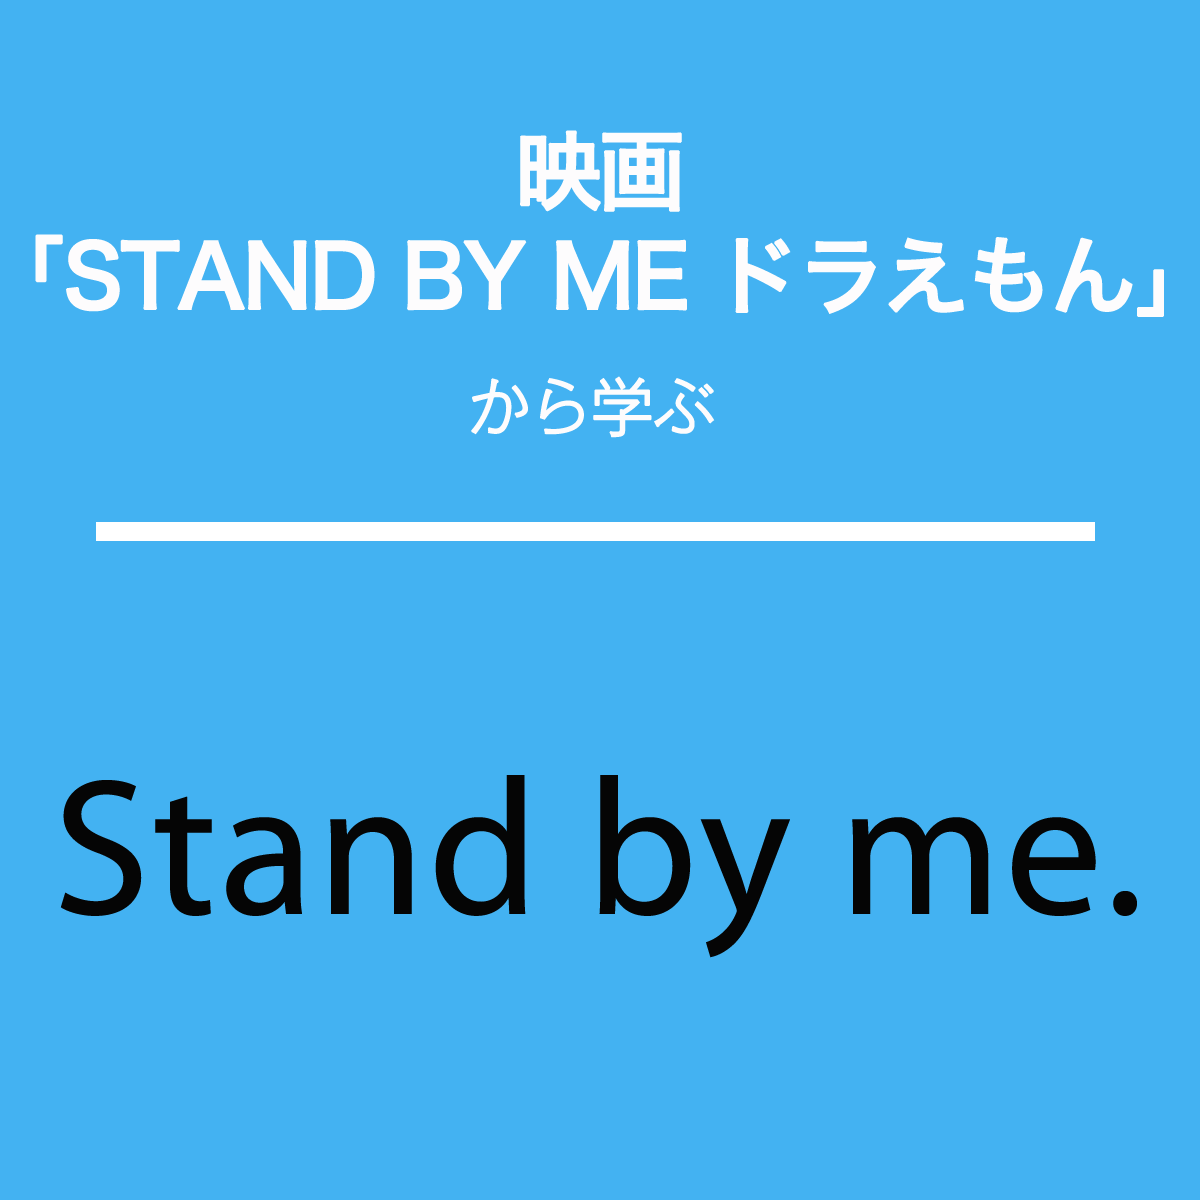 映画｢STAND BY ME ドラえもん｣から学ぶ→Stand by me.